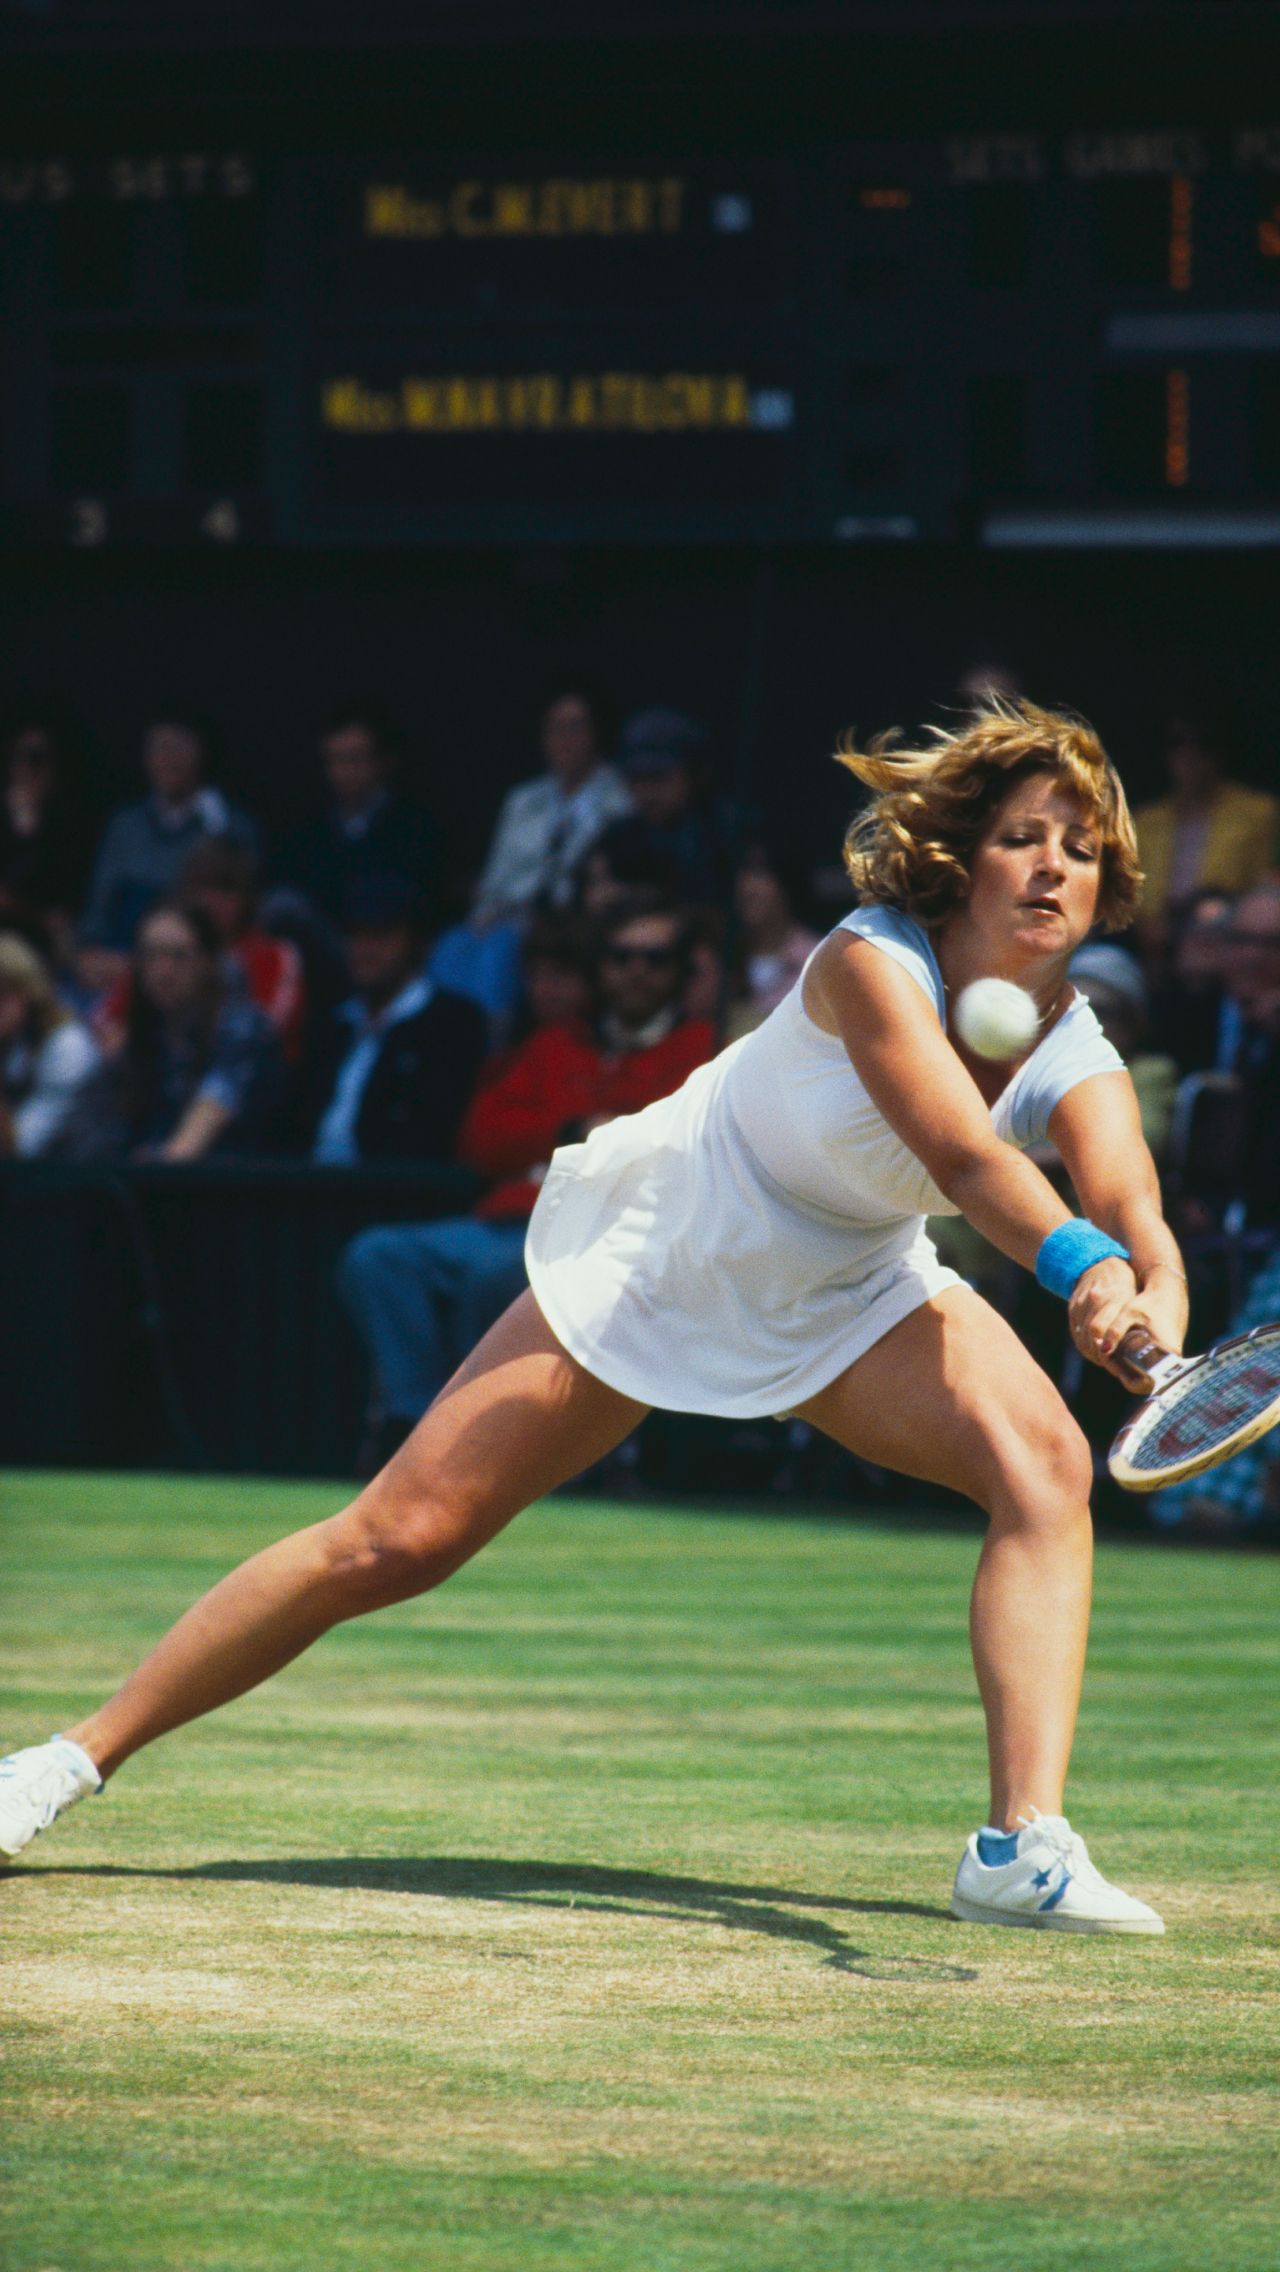 Соболенко станет 29-м в истории лидером рейтинга WTA. А первой была 18-кратная чемпионка ТБШ Крис Эверт. Впервые женская классификация была опубликована в ноябре 1975 года.